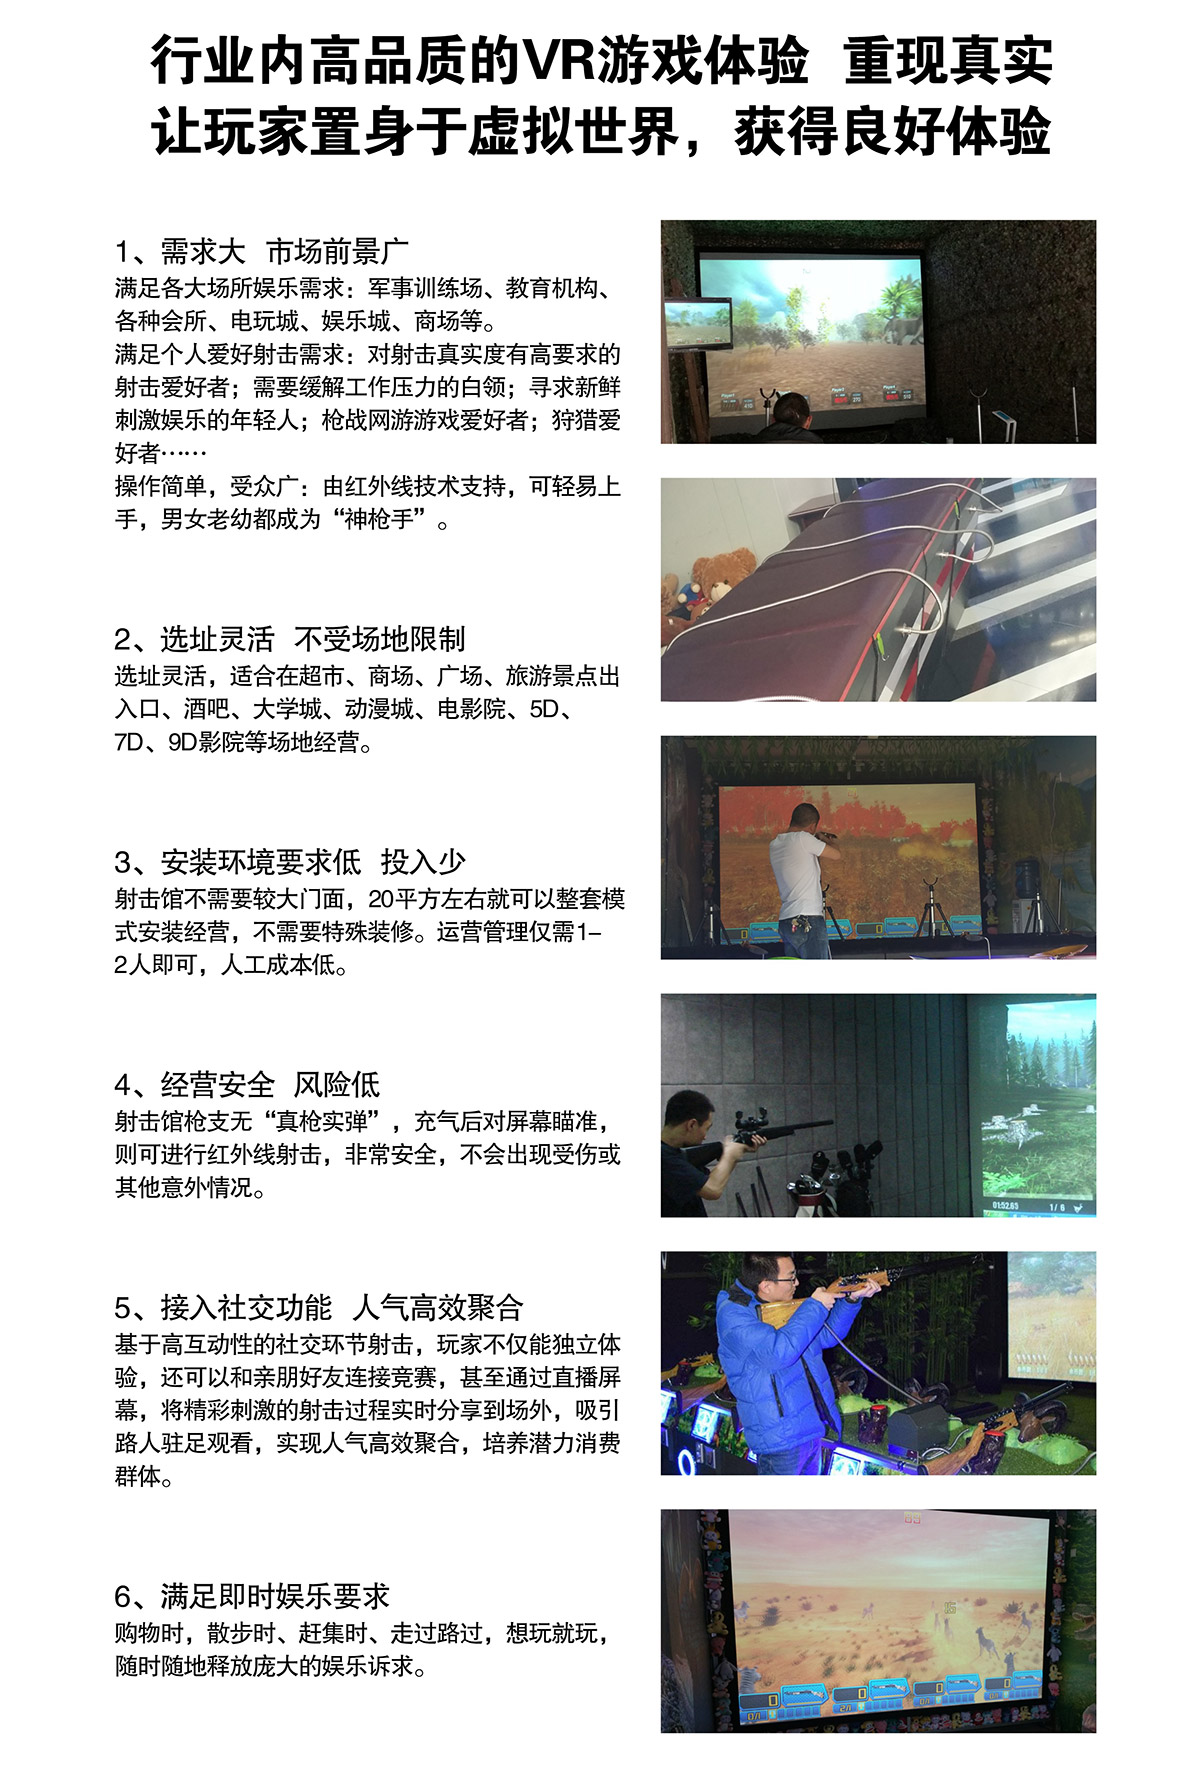 07-行业高品质VR游戏体验卓信智诚.jpg